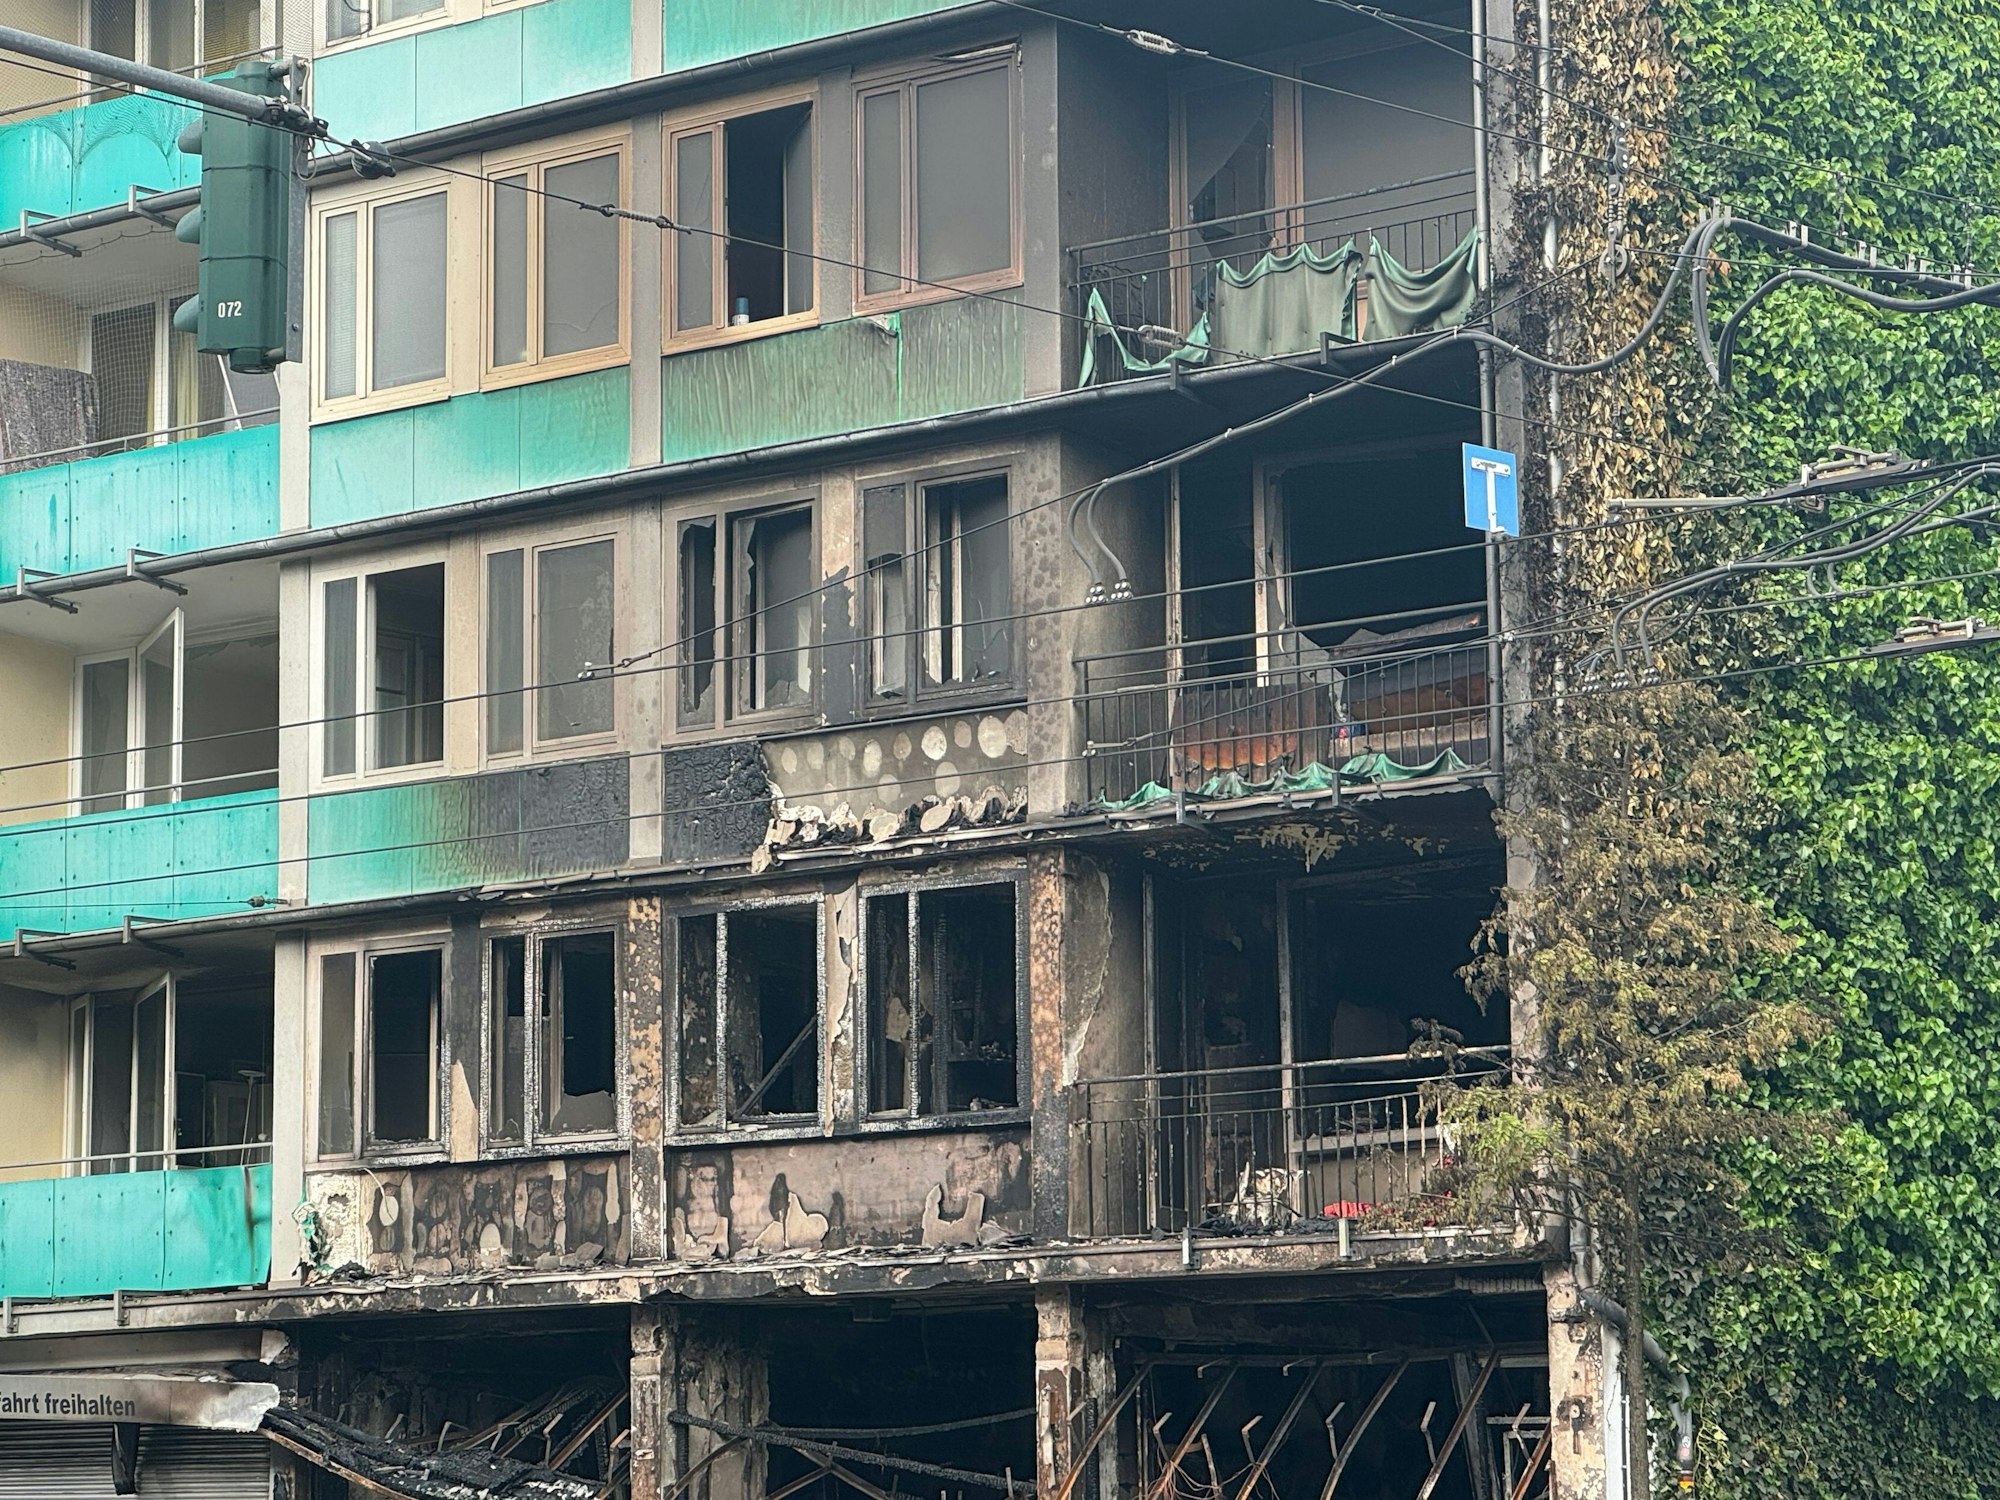 Der Kiosk und das darüberliegende Wohnhaus an der Lichtstraße/Ecke Grafenberger Allee in Düsseldorf sind nach einem Feuer komplett ausgebrannt.